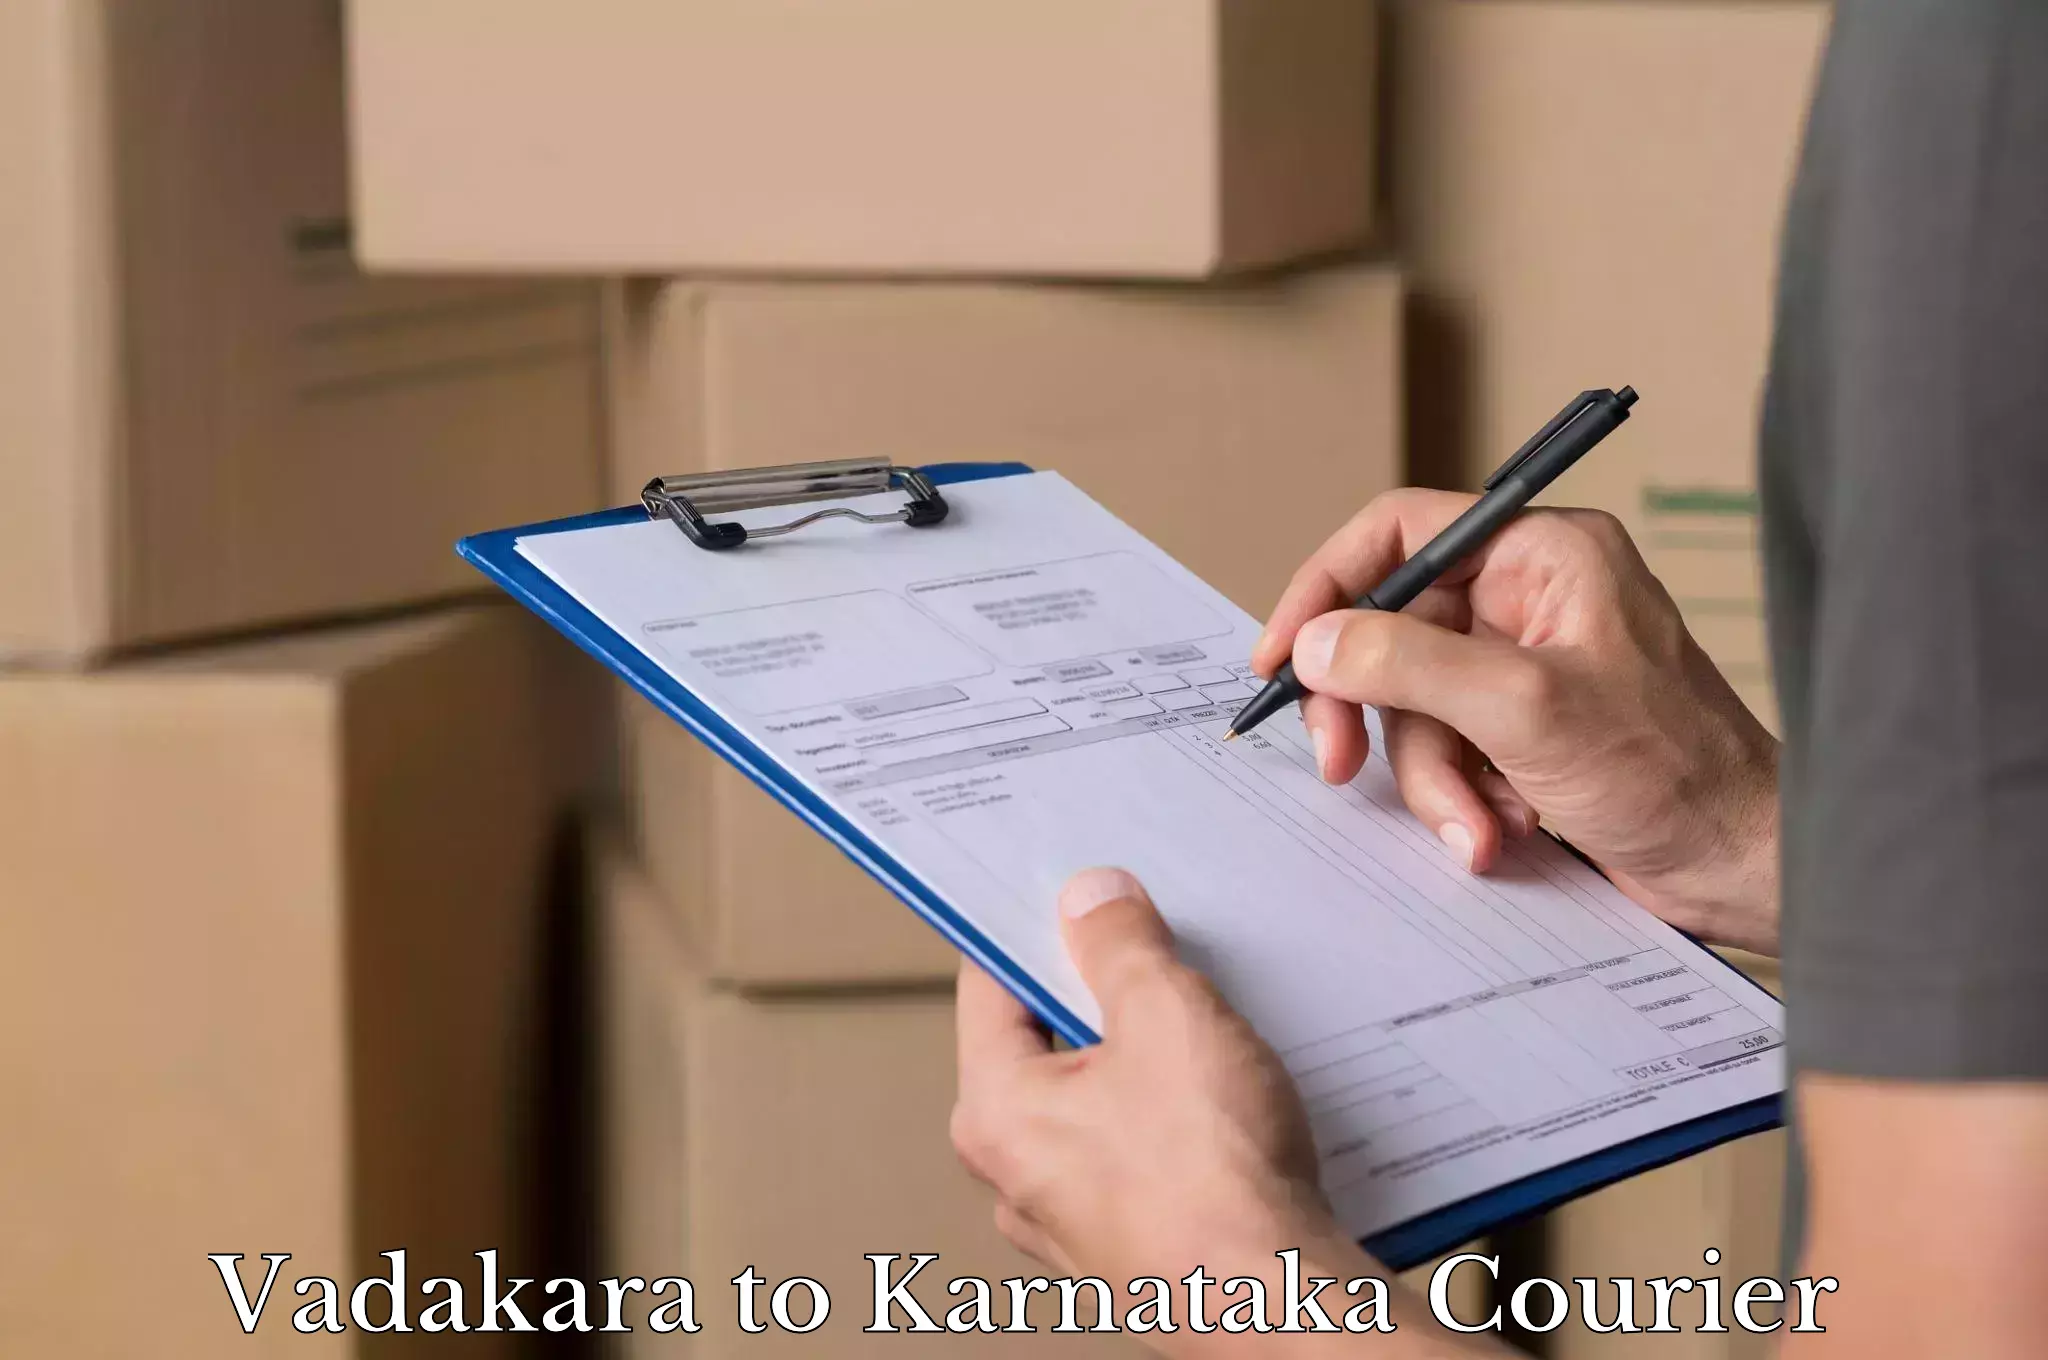 Baggage delivery scheduling Vadakara to Kanakapura